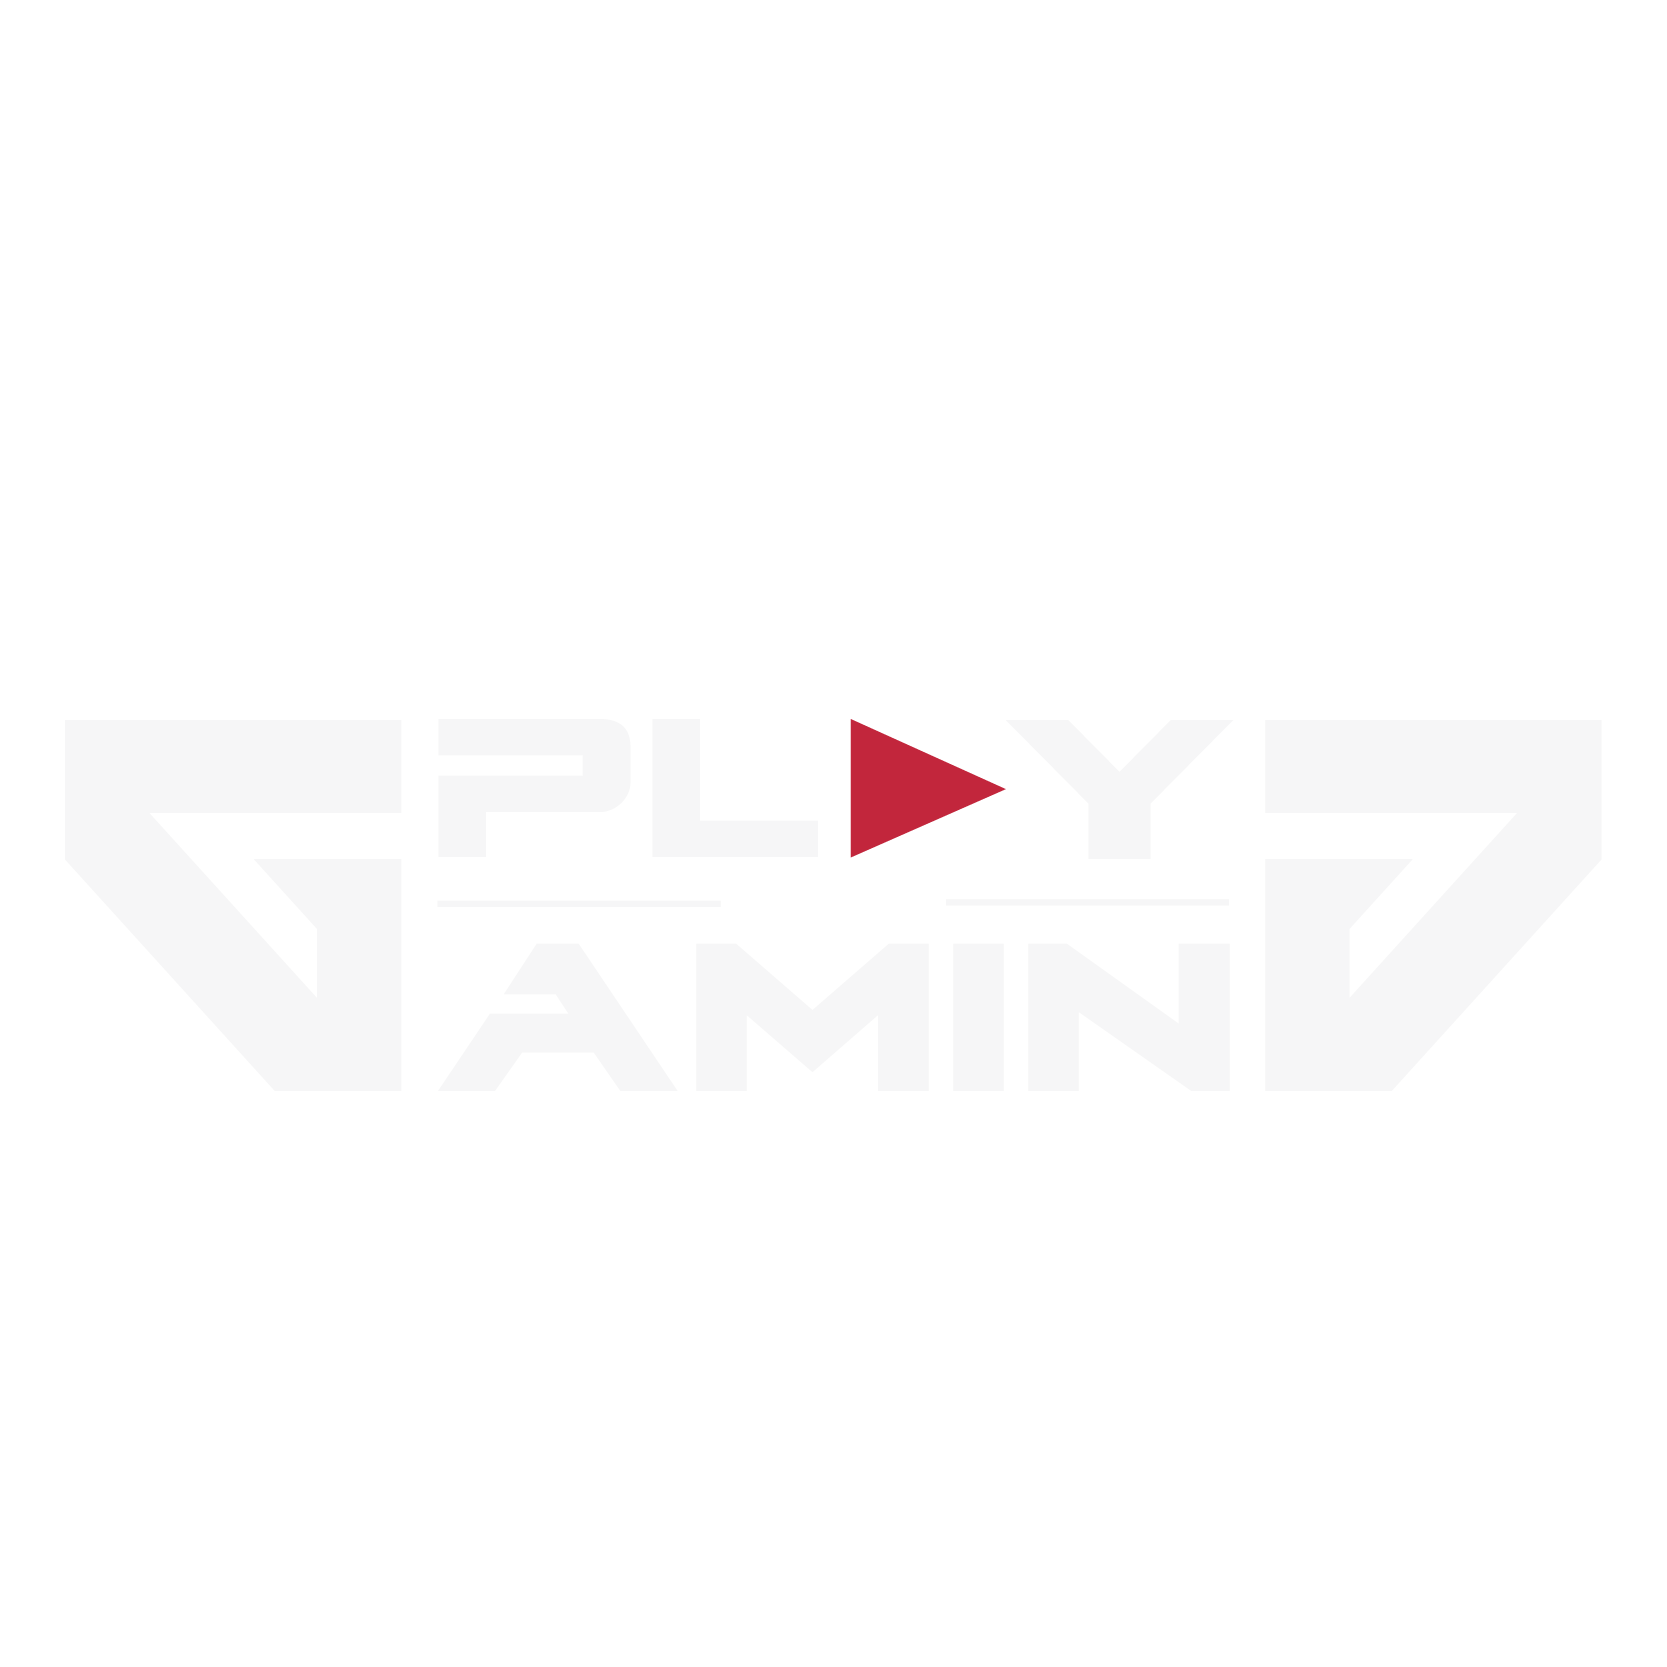 logo play and gaming